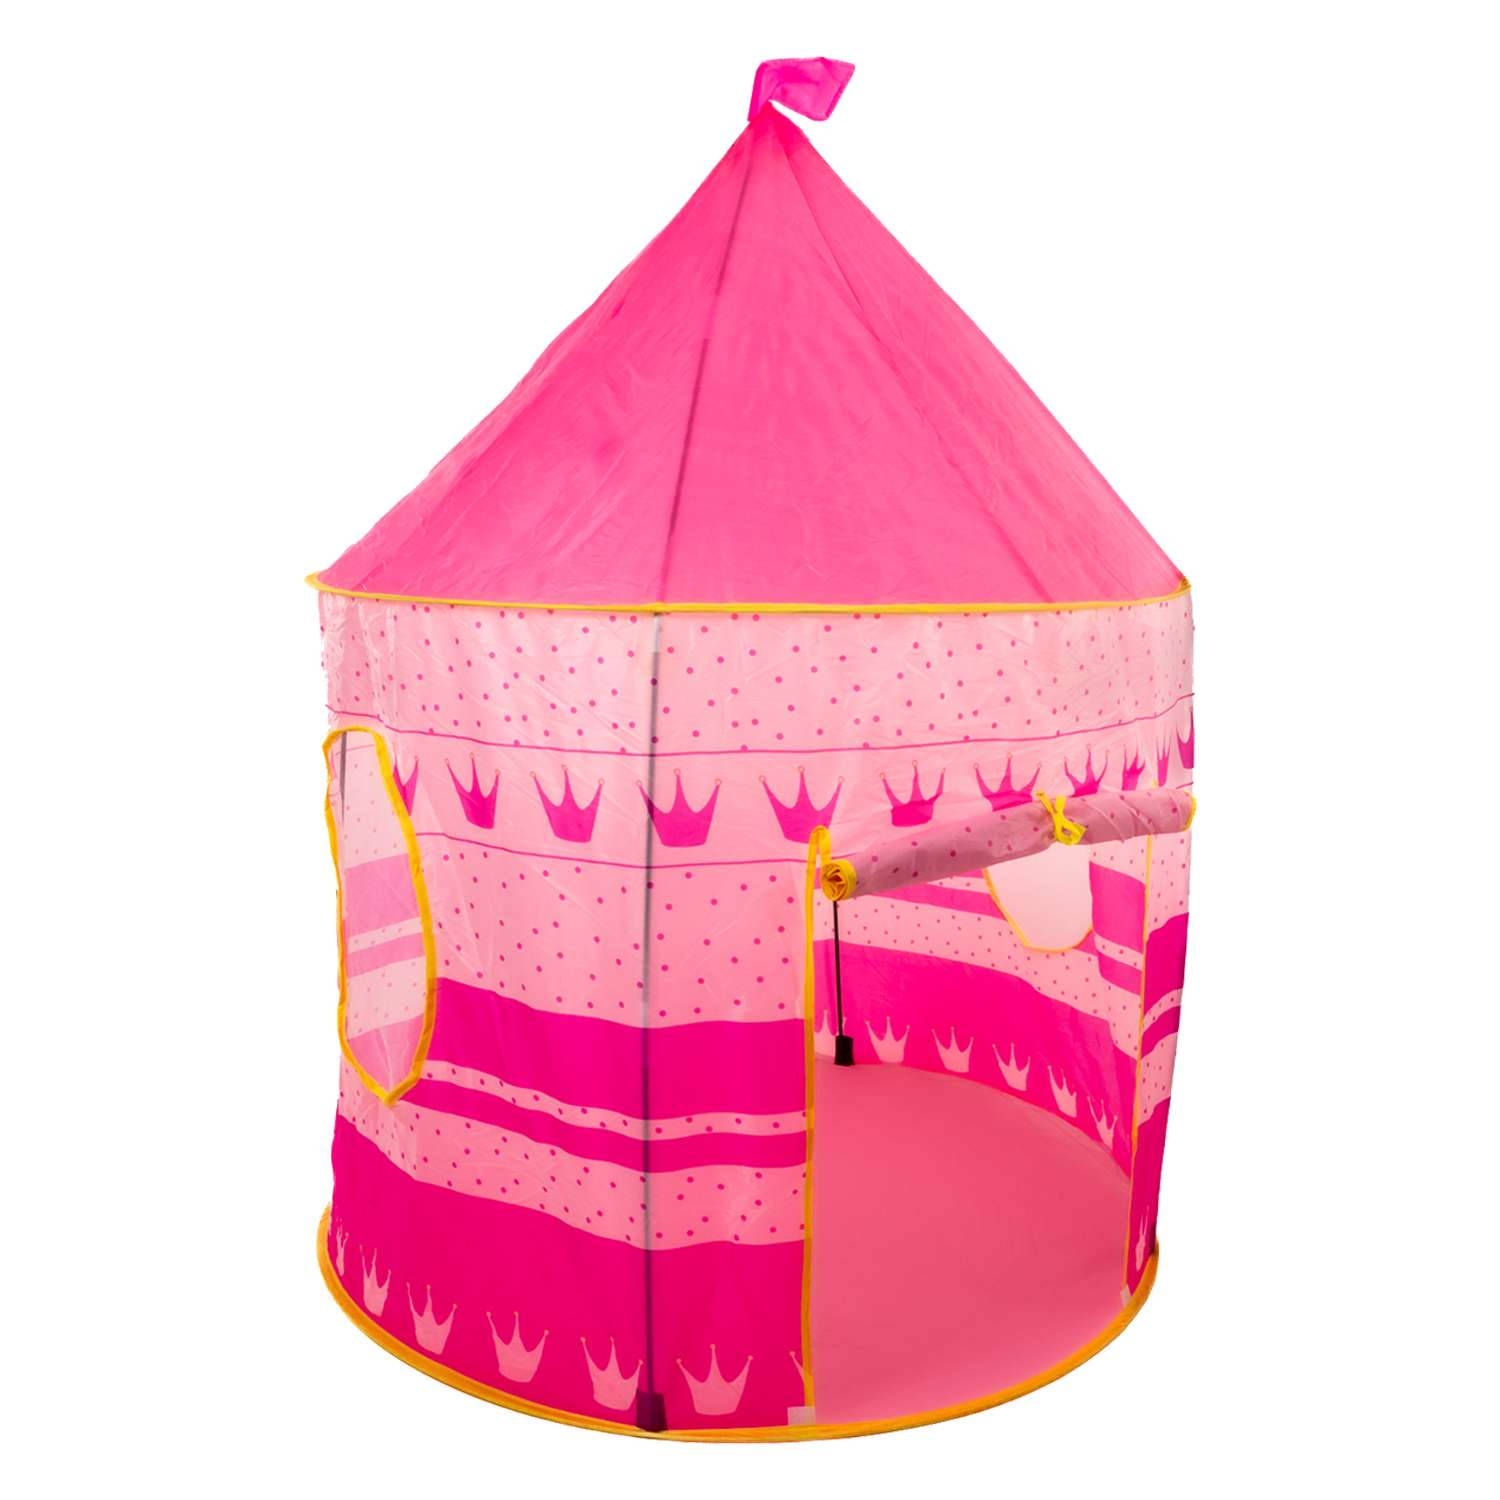 Intirilife kinderspeeltent voor jongens en meisjes in het roze met kronen, met draagtas - 100 x 128 cm